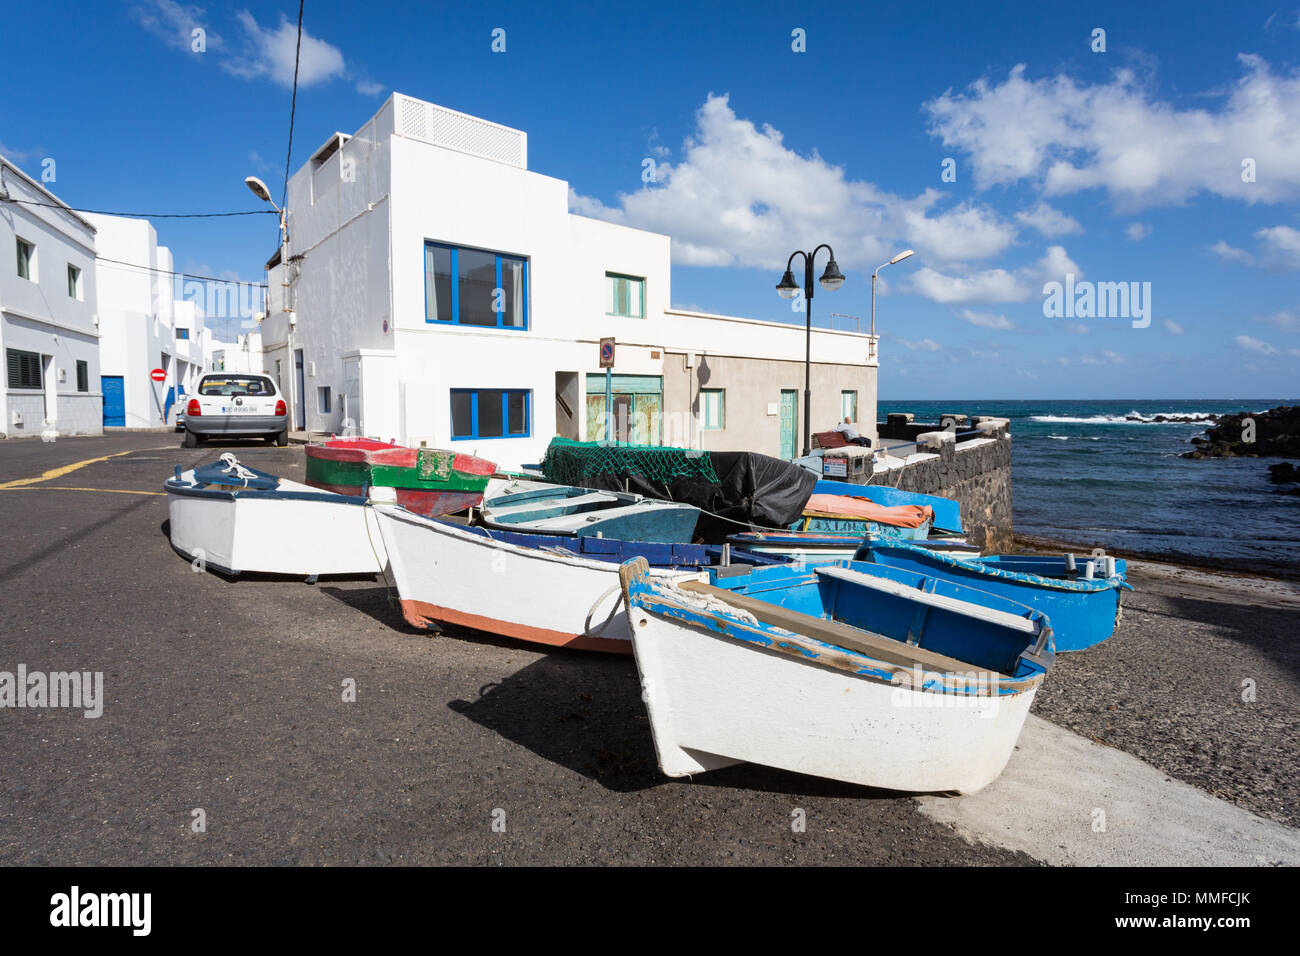 PUNTA MUJERES, Lanzarote, Kanarische Inseln, Spanien, Europa: Angeln Boote liegen auf dem Trockenen, in dem kleinen Dorf. Stockfoto